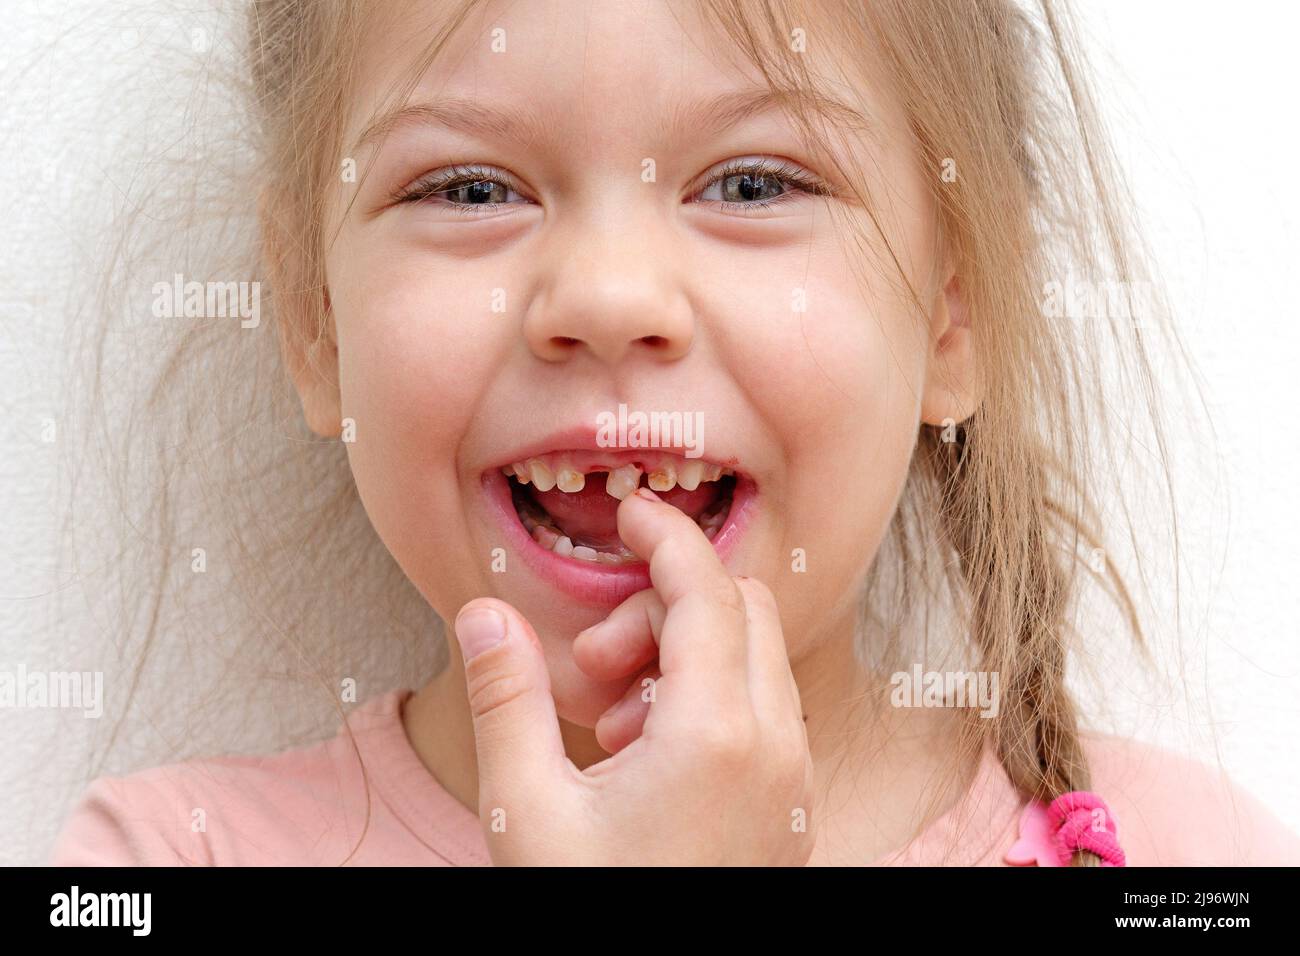 Glückliches und lächelndes kaukasisches kleines Mädchen von 5-6 Jahren, das mit dem Finger lose Zähne berührt und die Kamera anschaut Stockfoto